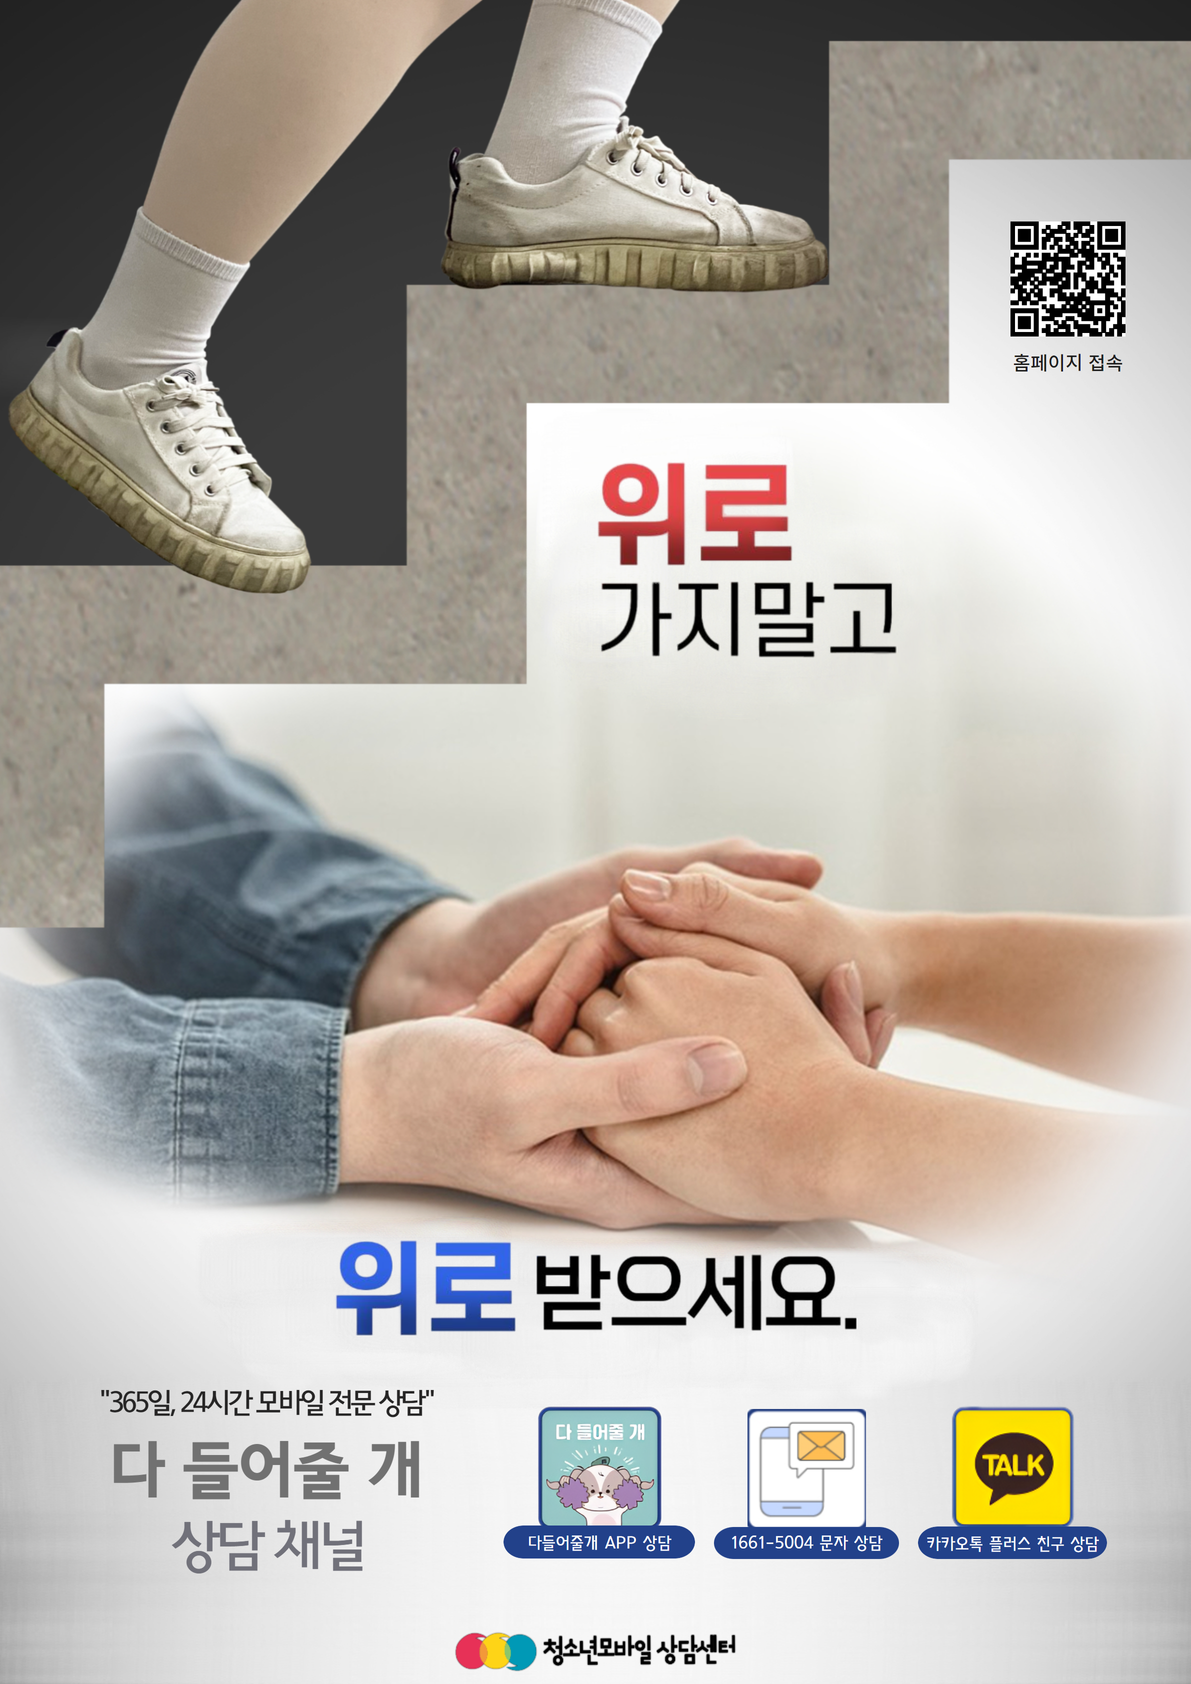 [붙임] 청소년모바일상담센터 상담채널 포스터